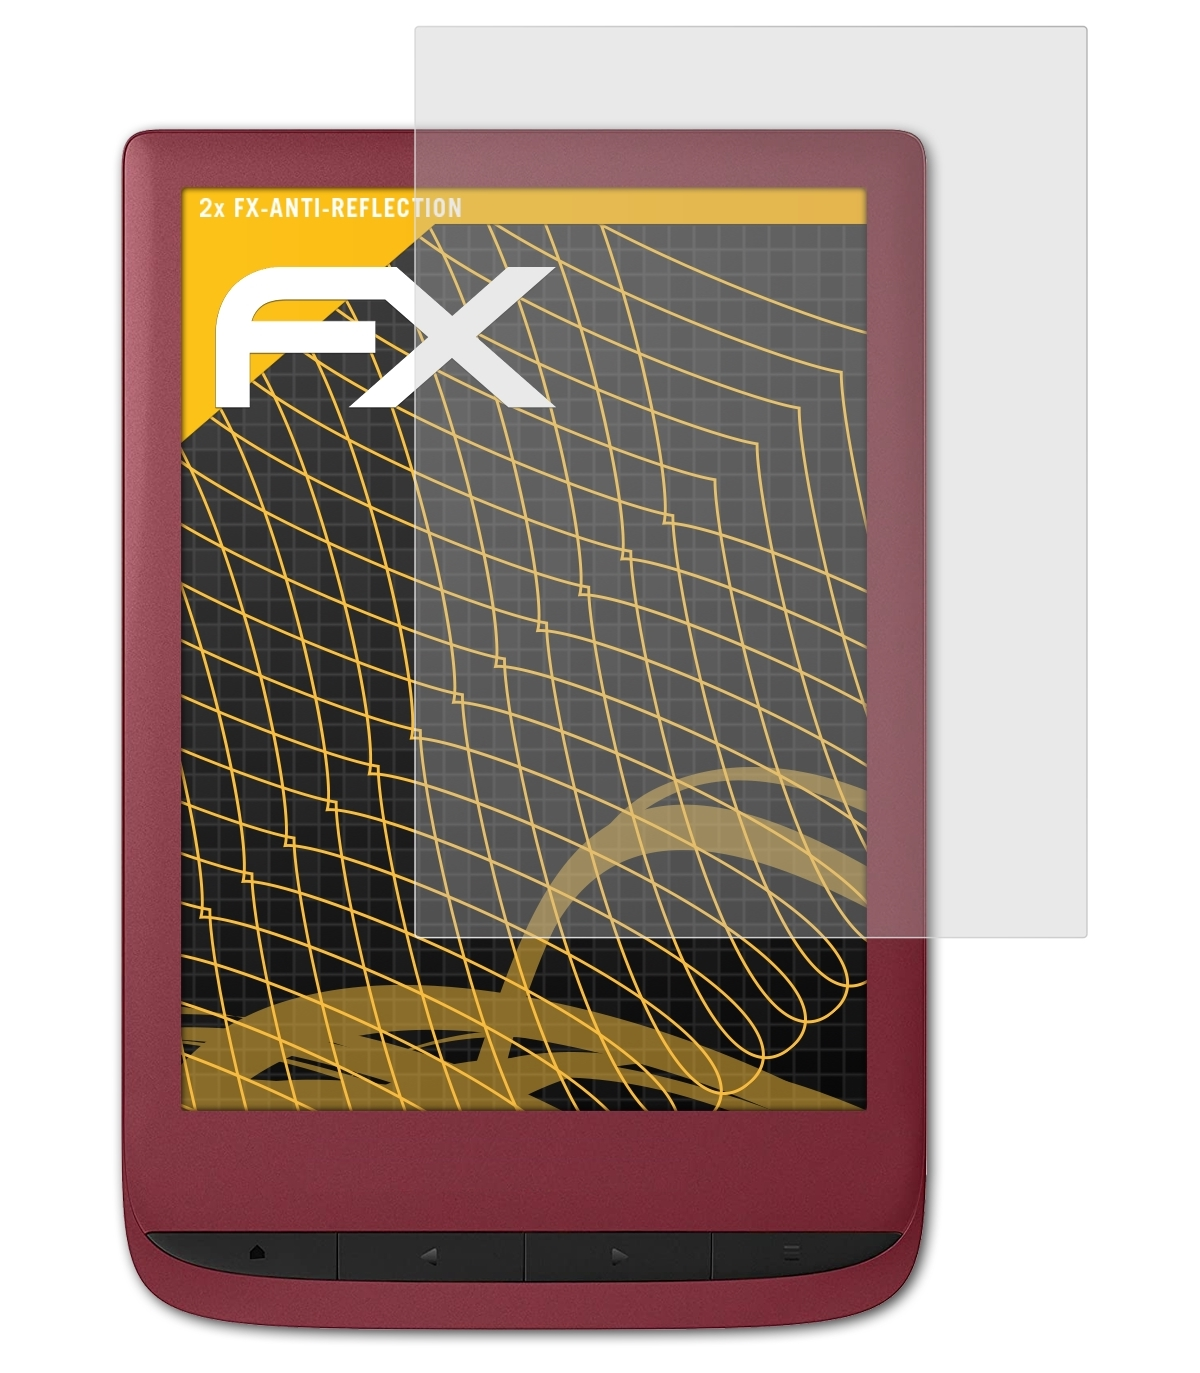 ATFOLIX 2x FX-Antireflex Displayschutz(für PocketBook Touch 5) Lux